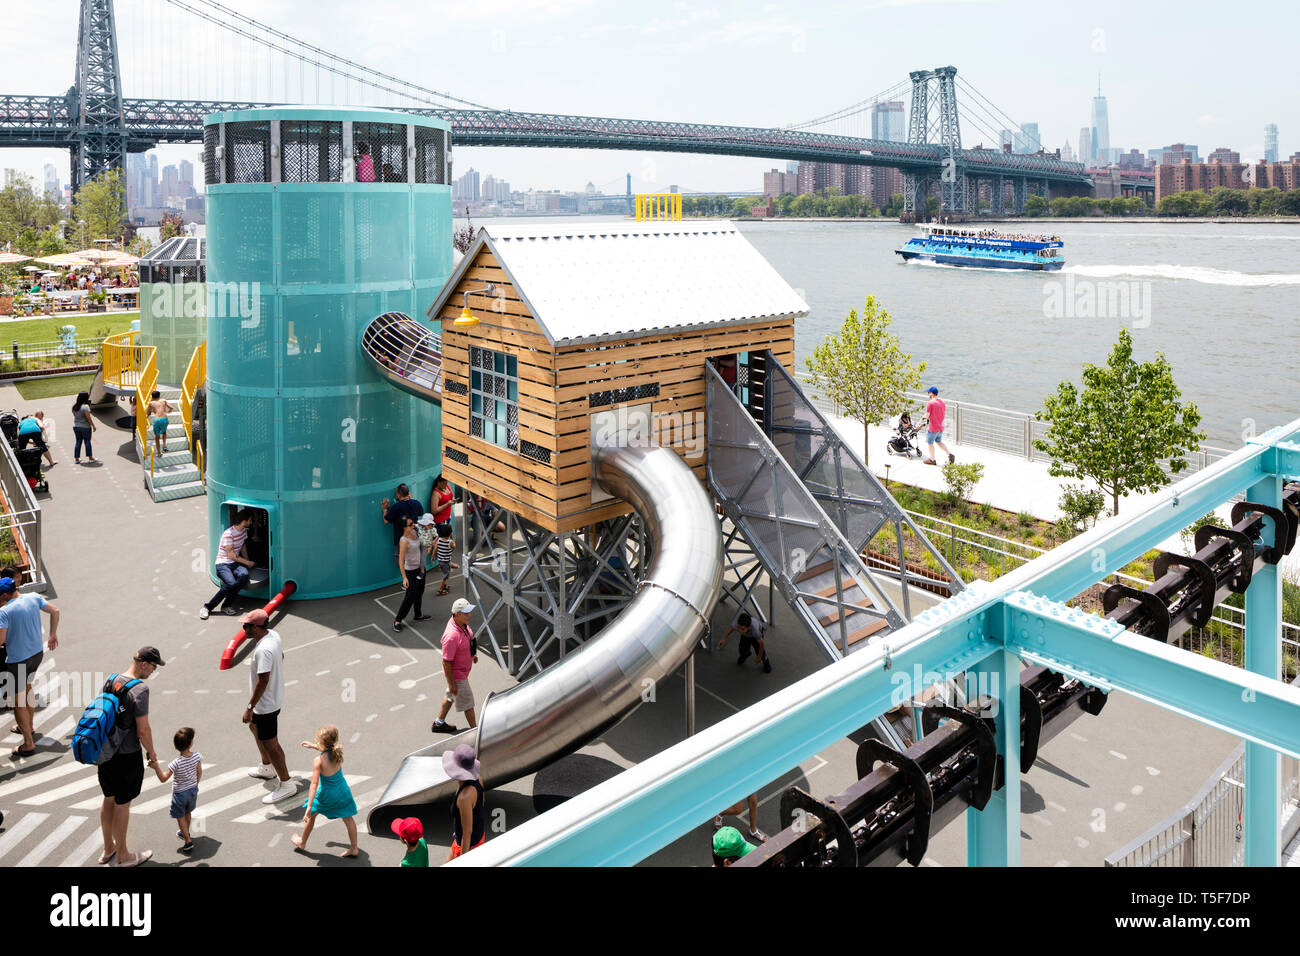 Kinderspielplatz, entworfen von dem Künstler Mark Reigelman eine Zuckerraffinerie zu ähneln. Domino Park, Brooklyn, USA. Architekt: James Corne Stockfoto